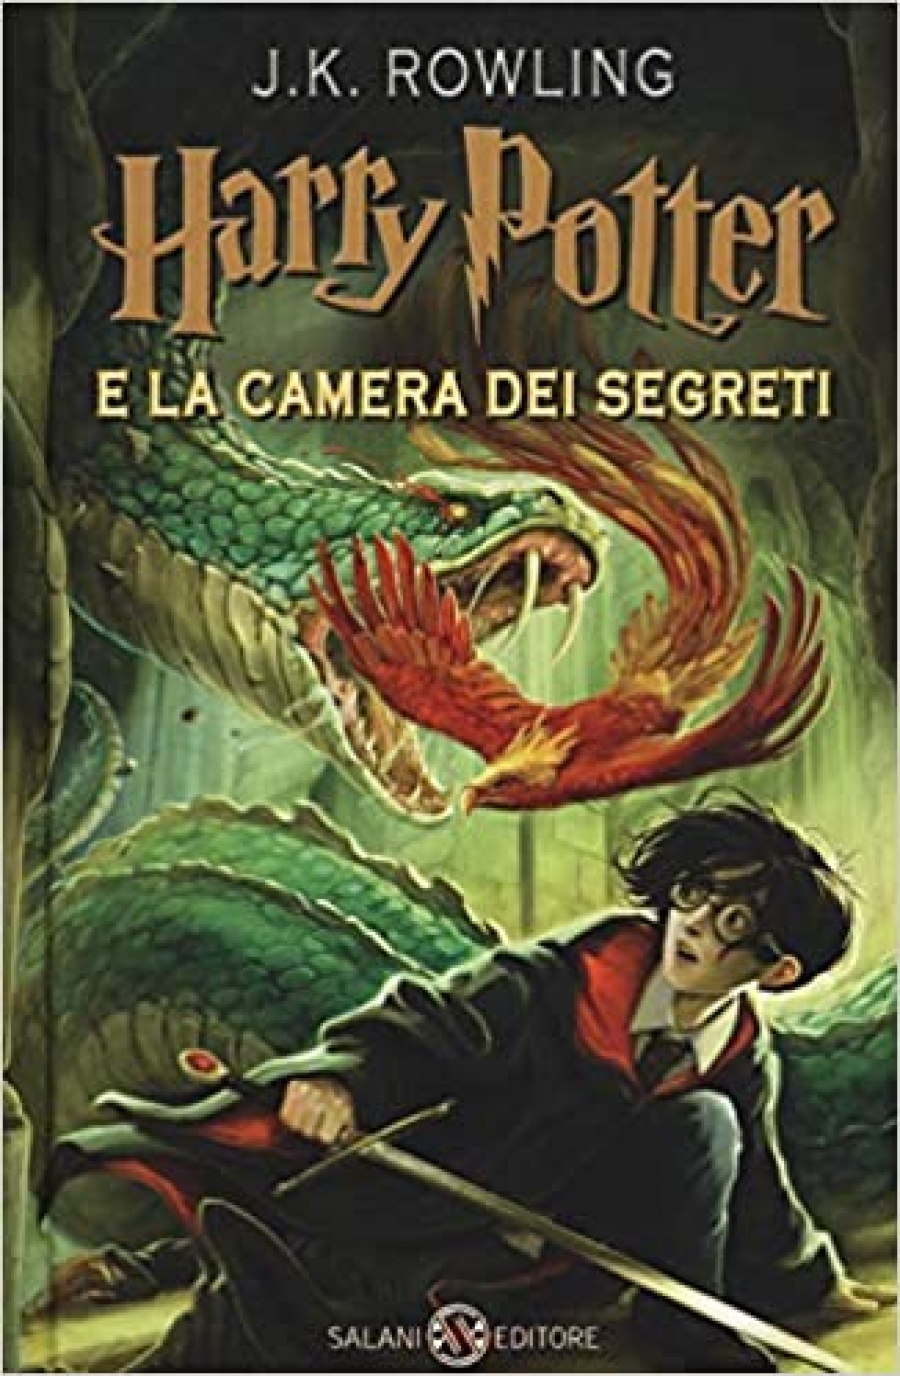 Rowling J.K. Harry Potter e la camera dei segreti: 2 